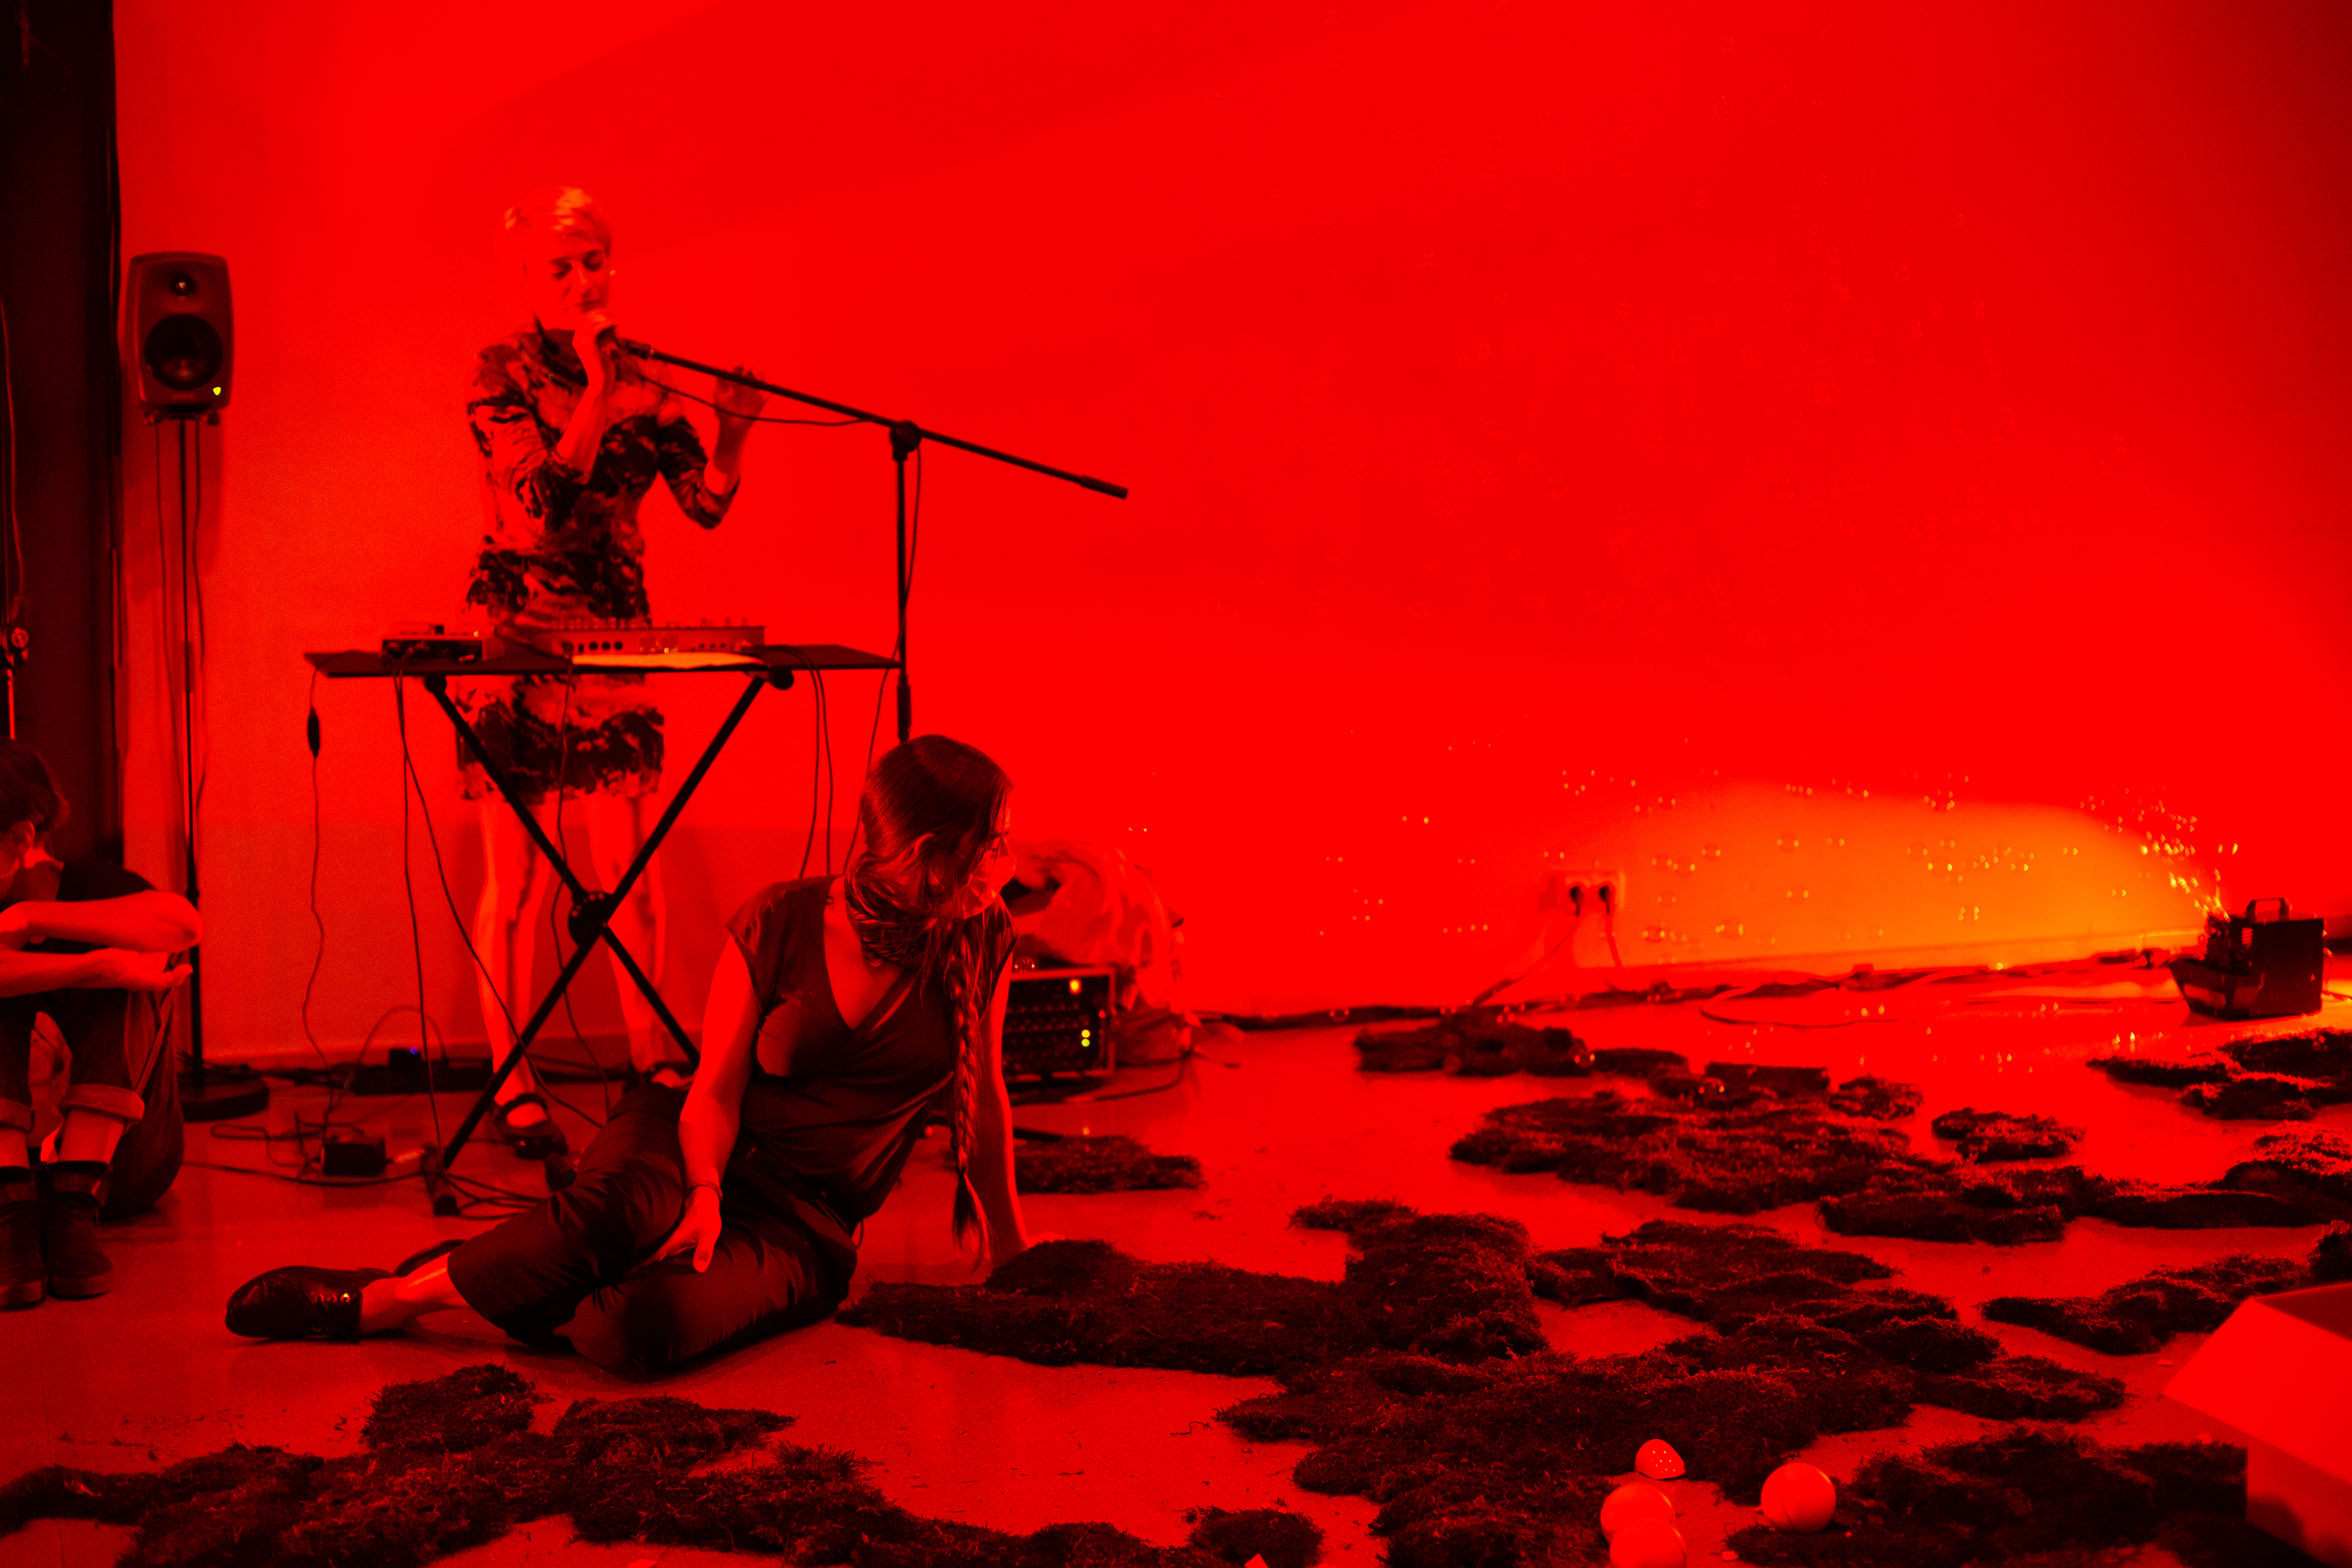 Ein in rotes Licht getauchter Raum. Auf dem Boden sitzt eine Person zwischen ringsum verteilten Moosen. Im Hintergrund ist eine weitere Frau an einem Keyboard zu sehen.